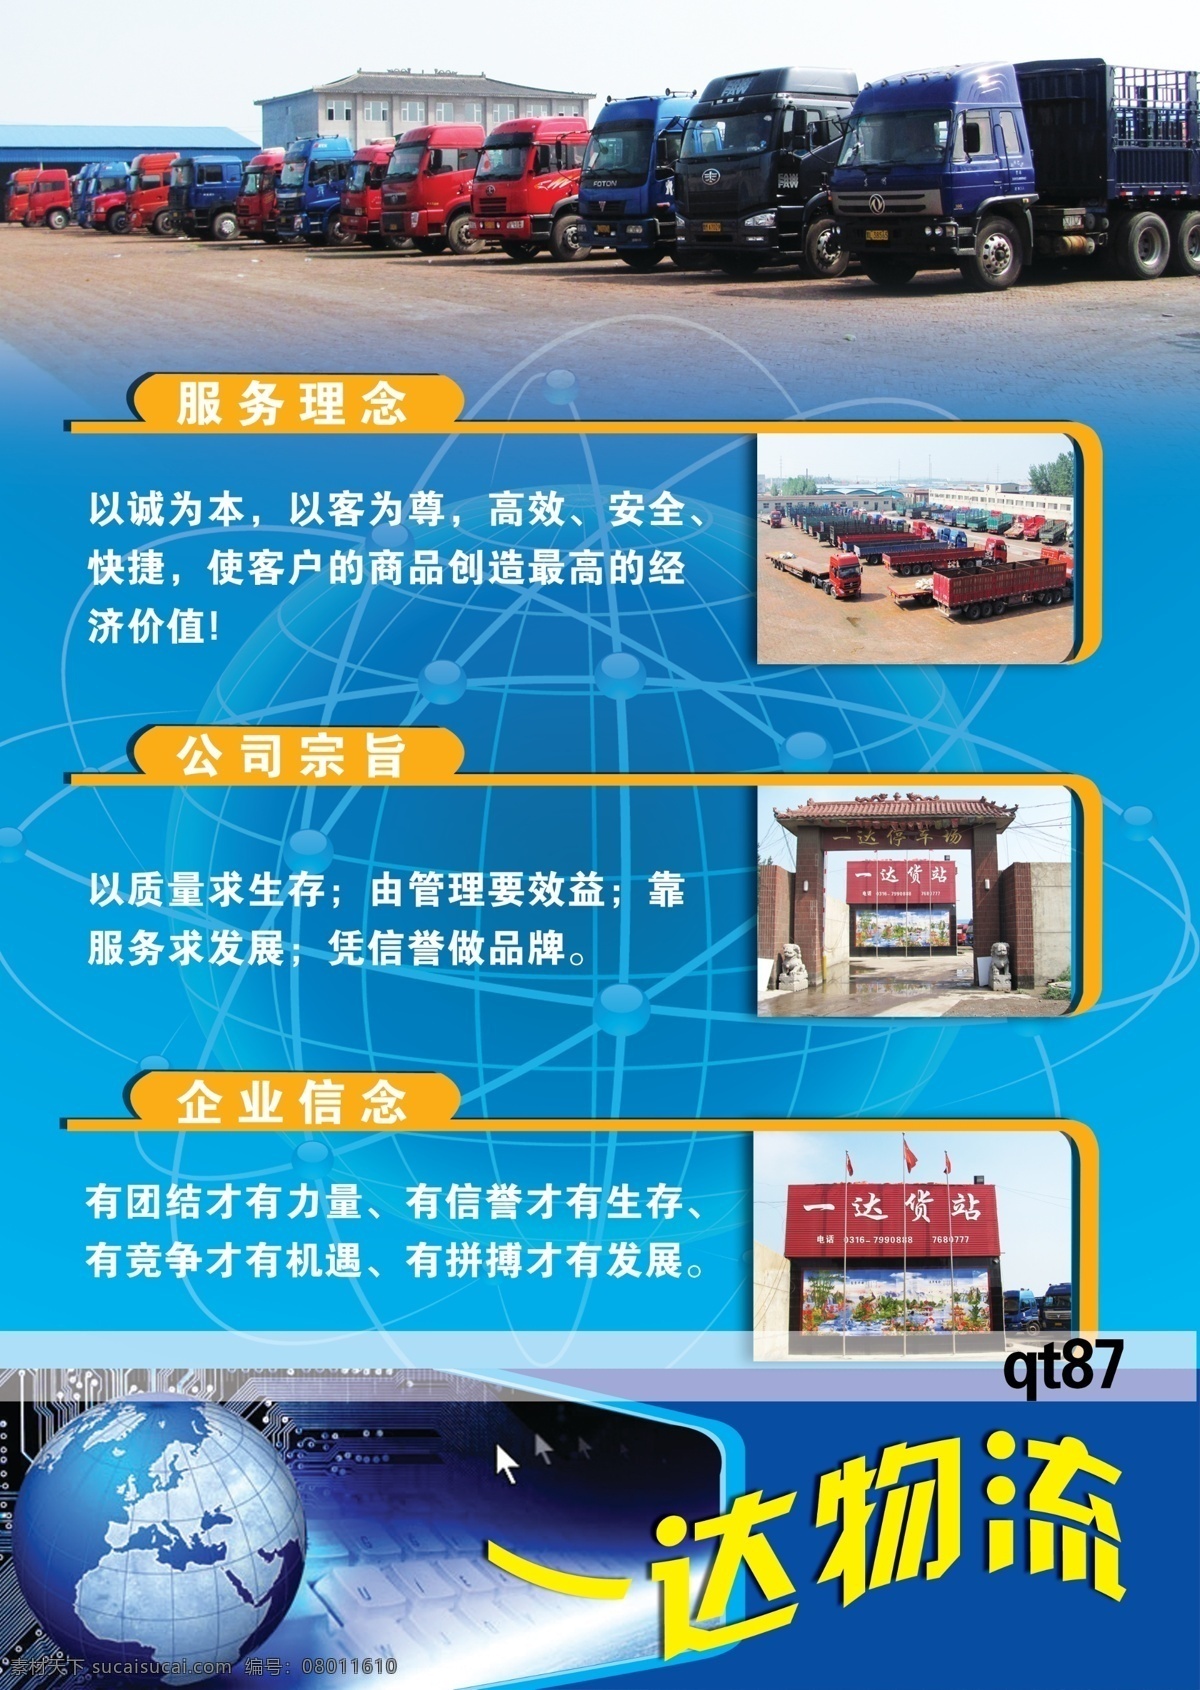 物流宣传单 卡车 红色的大卡车 蓝色的大卡车 火车 地球 键盘 简介 dm宣传单 广告设计模板 源文件